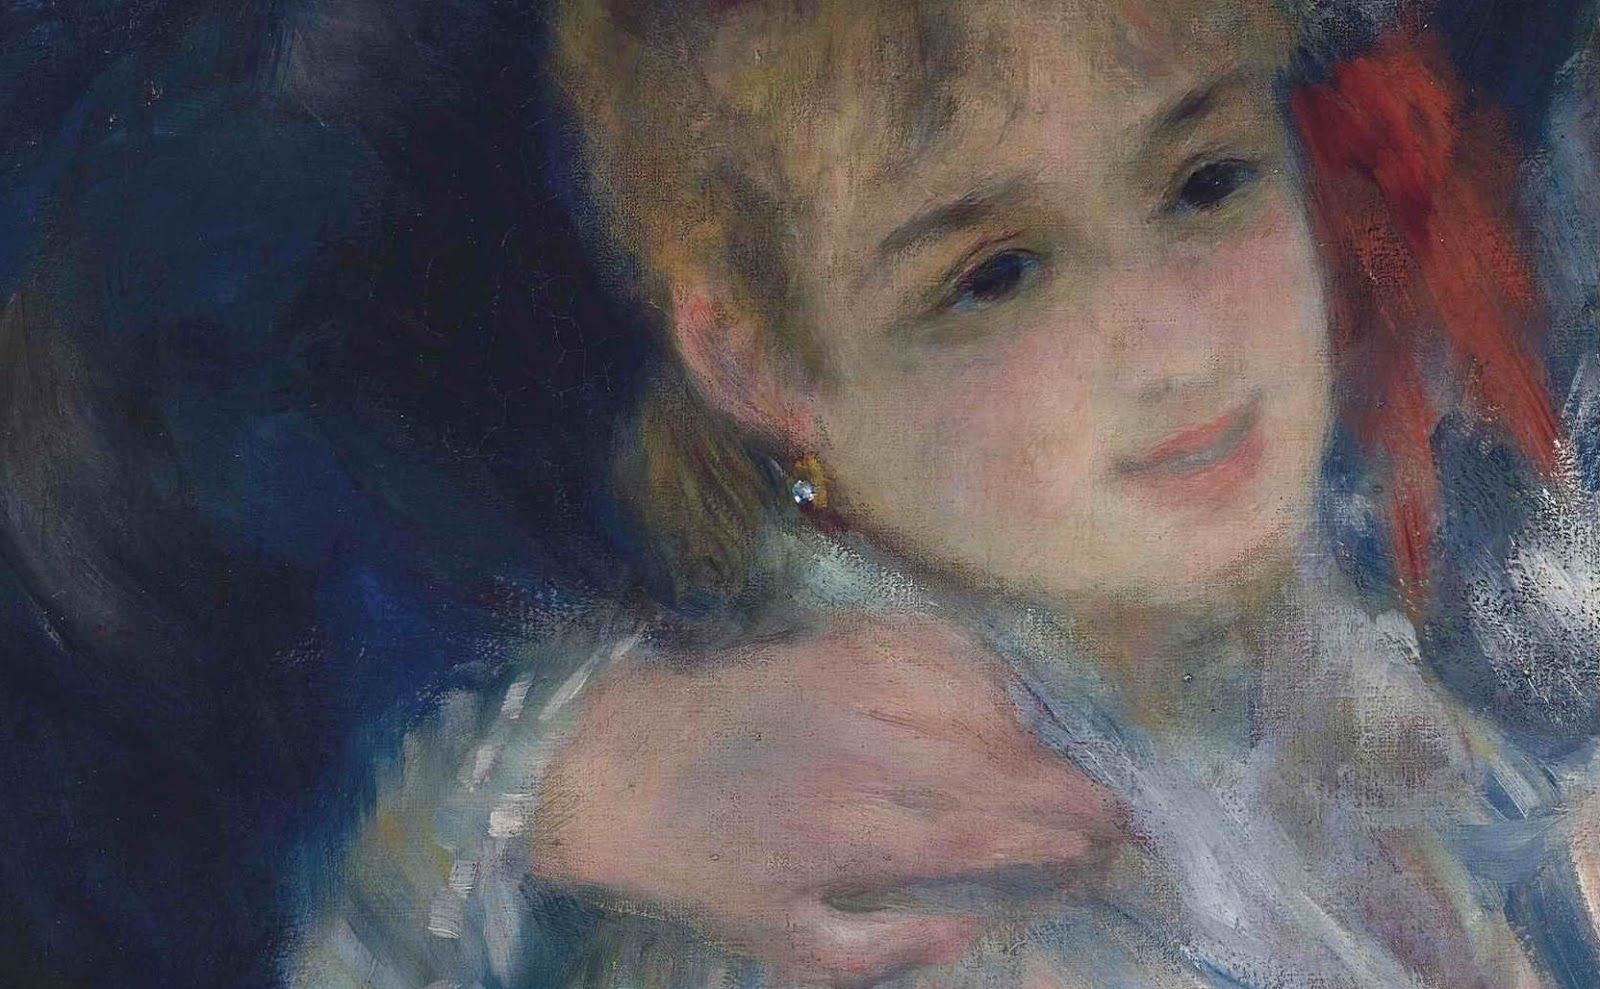 Pierre+Auguste+Renoir-1841-1-19 (427).JPG